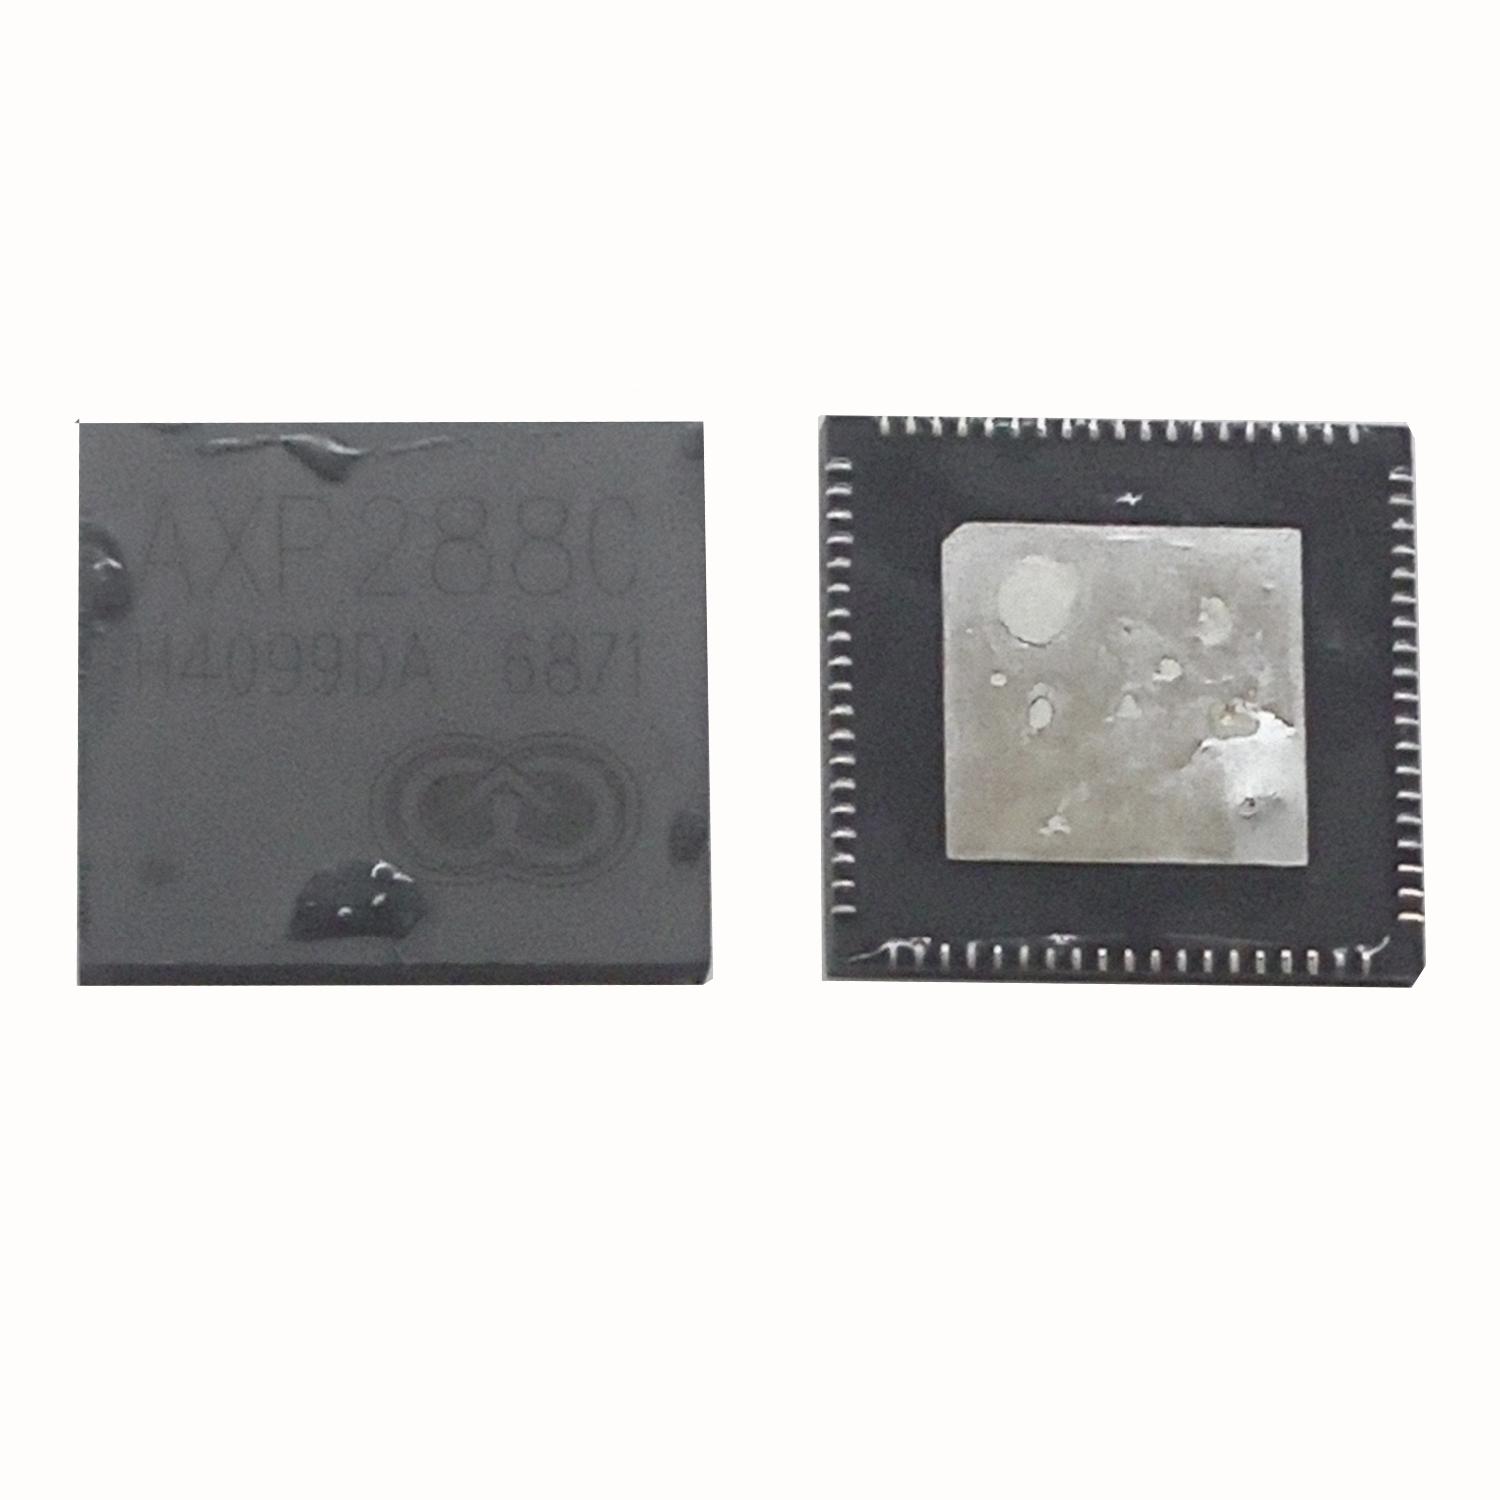 Микросхема AXP288c